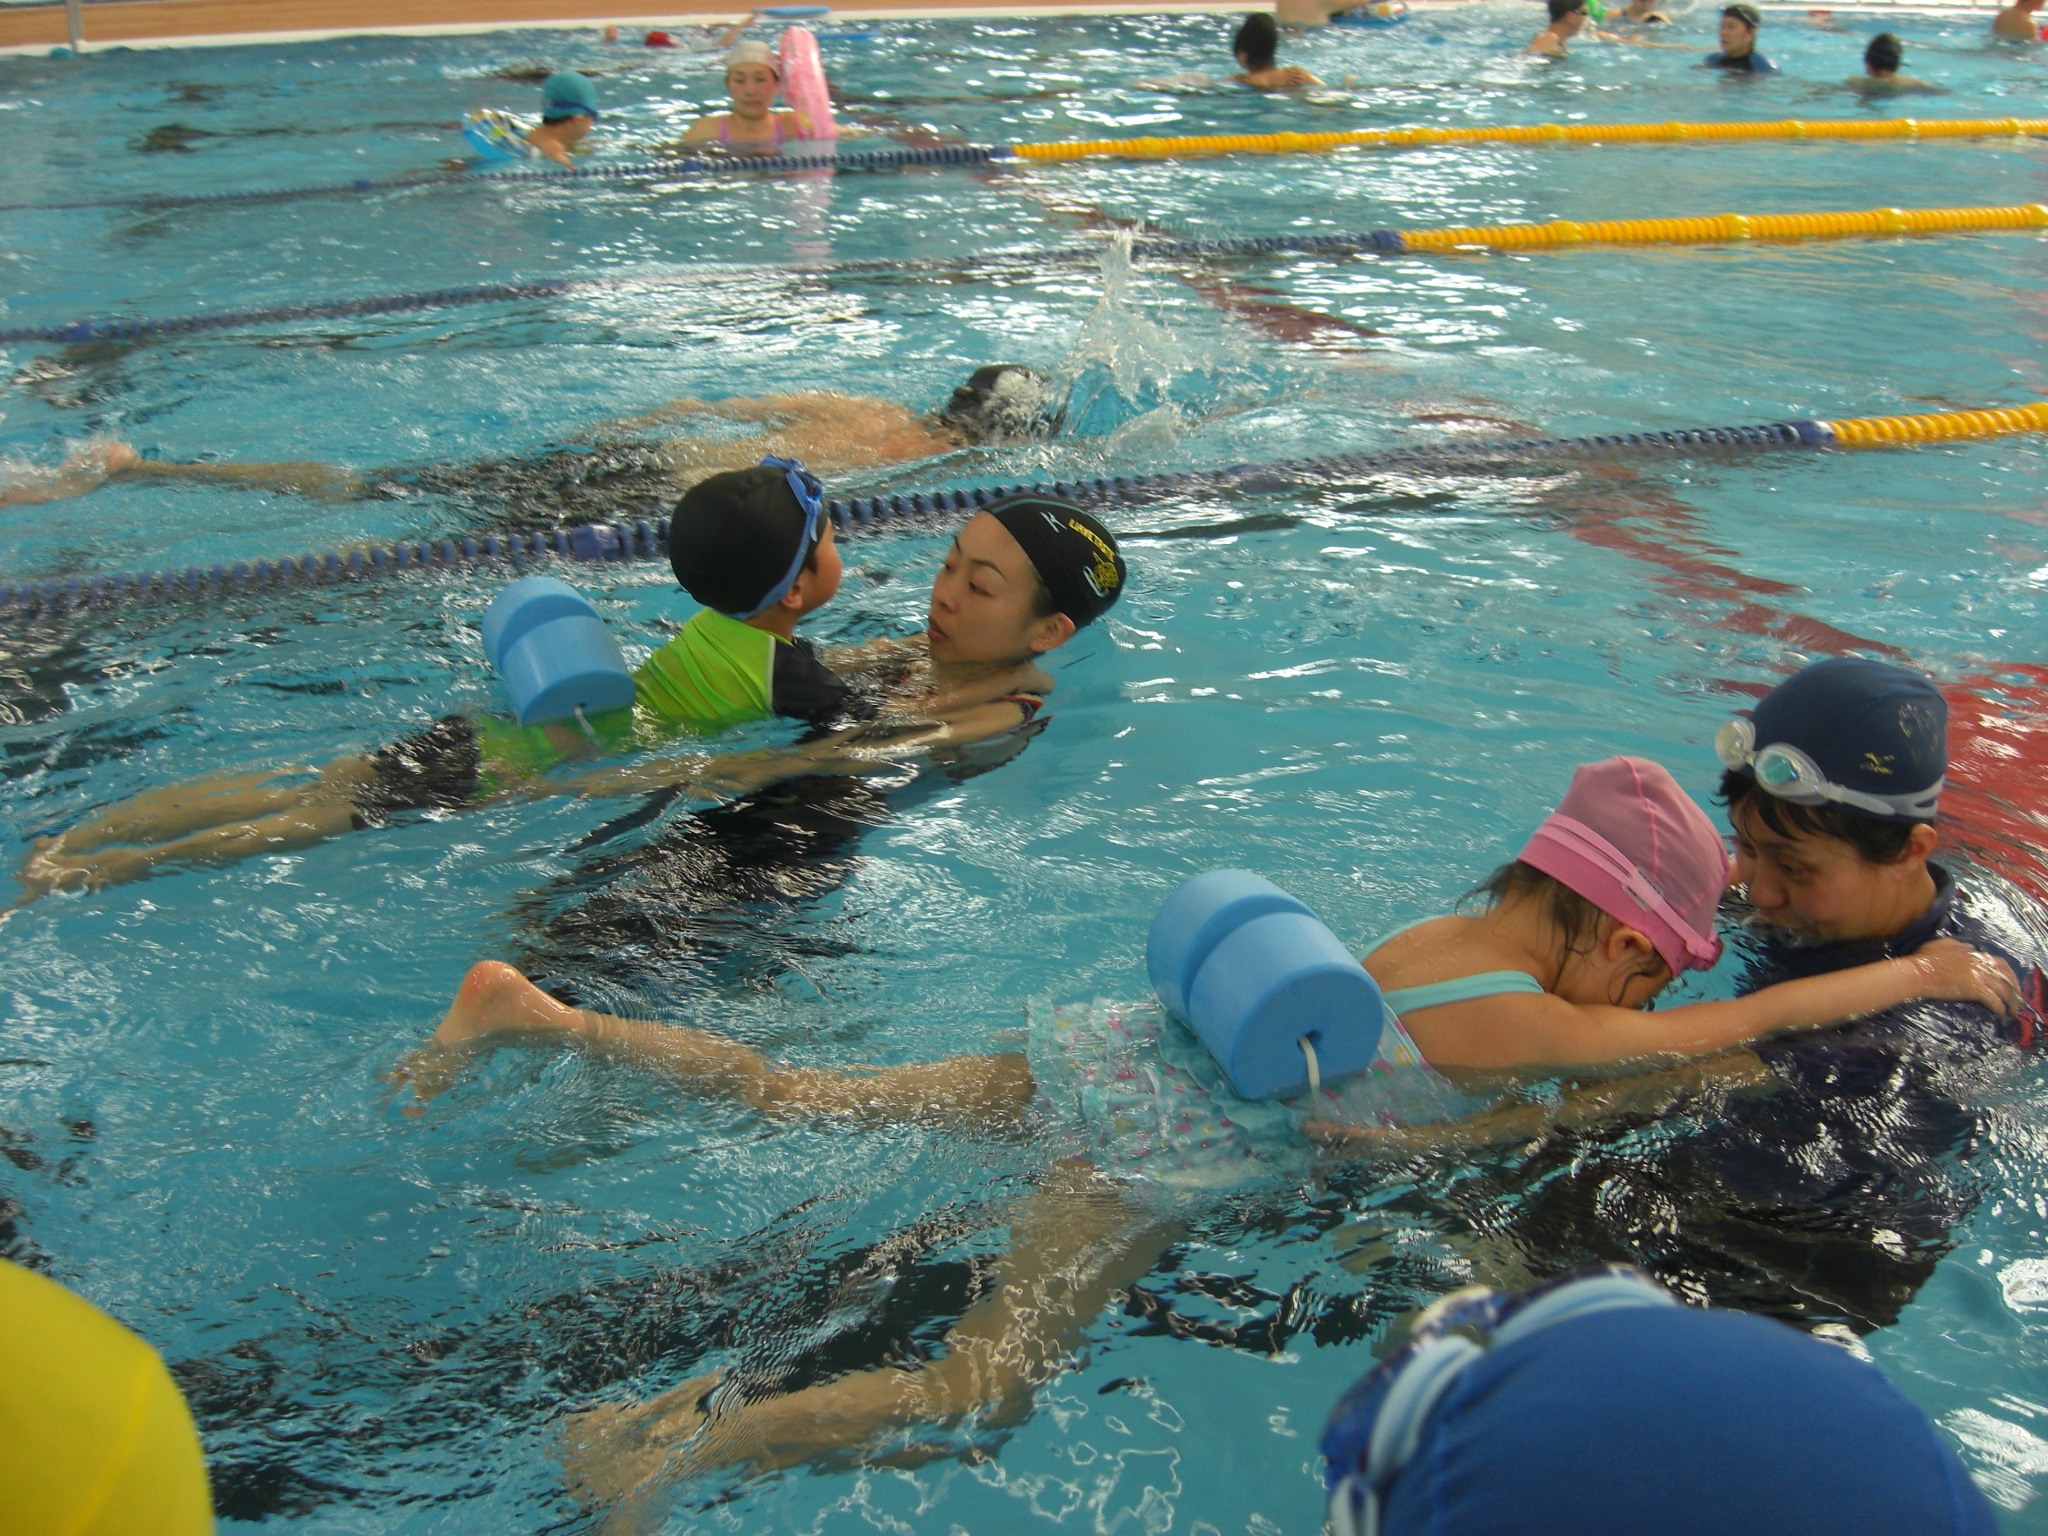 小学生水泳教室 上級 令和2 年度 やまとナビ Navi 神奈川県大和市のスポーツ よか みどり情報サイト